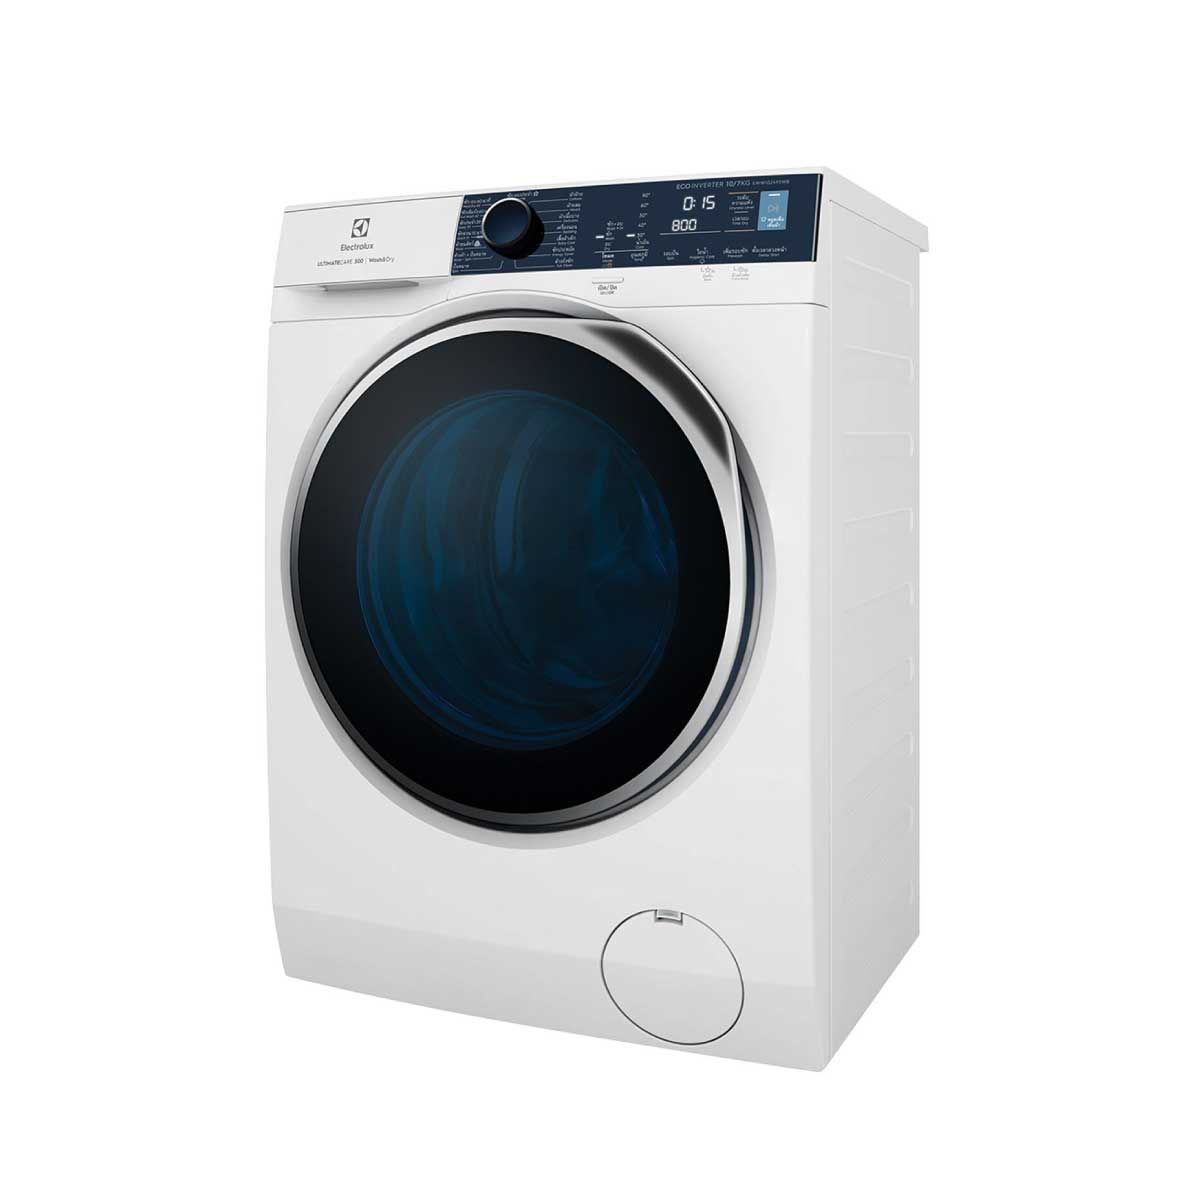 ELECTROLUX  เครื่องซักผ้า/อบผ้า 10/7Kg. Ultramix Inverter สีขาว รุ่น EWW1024P5WB